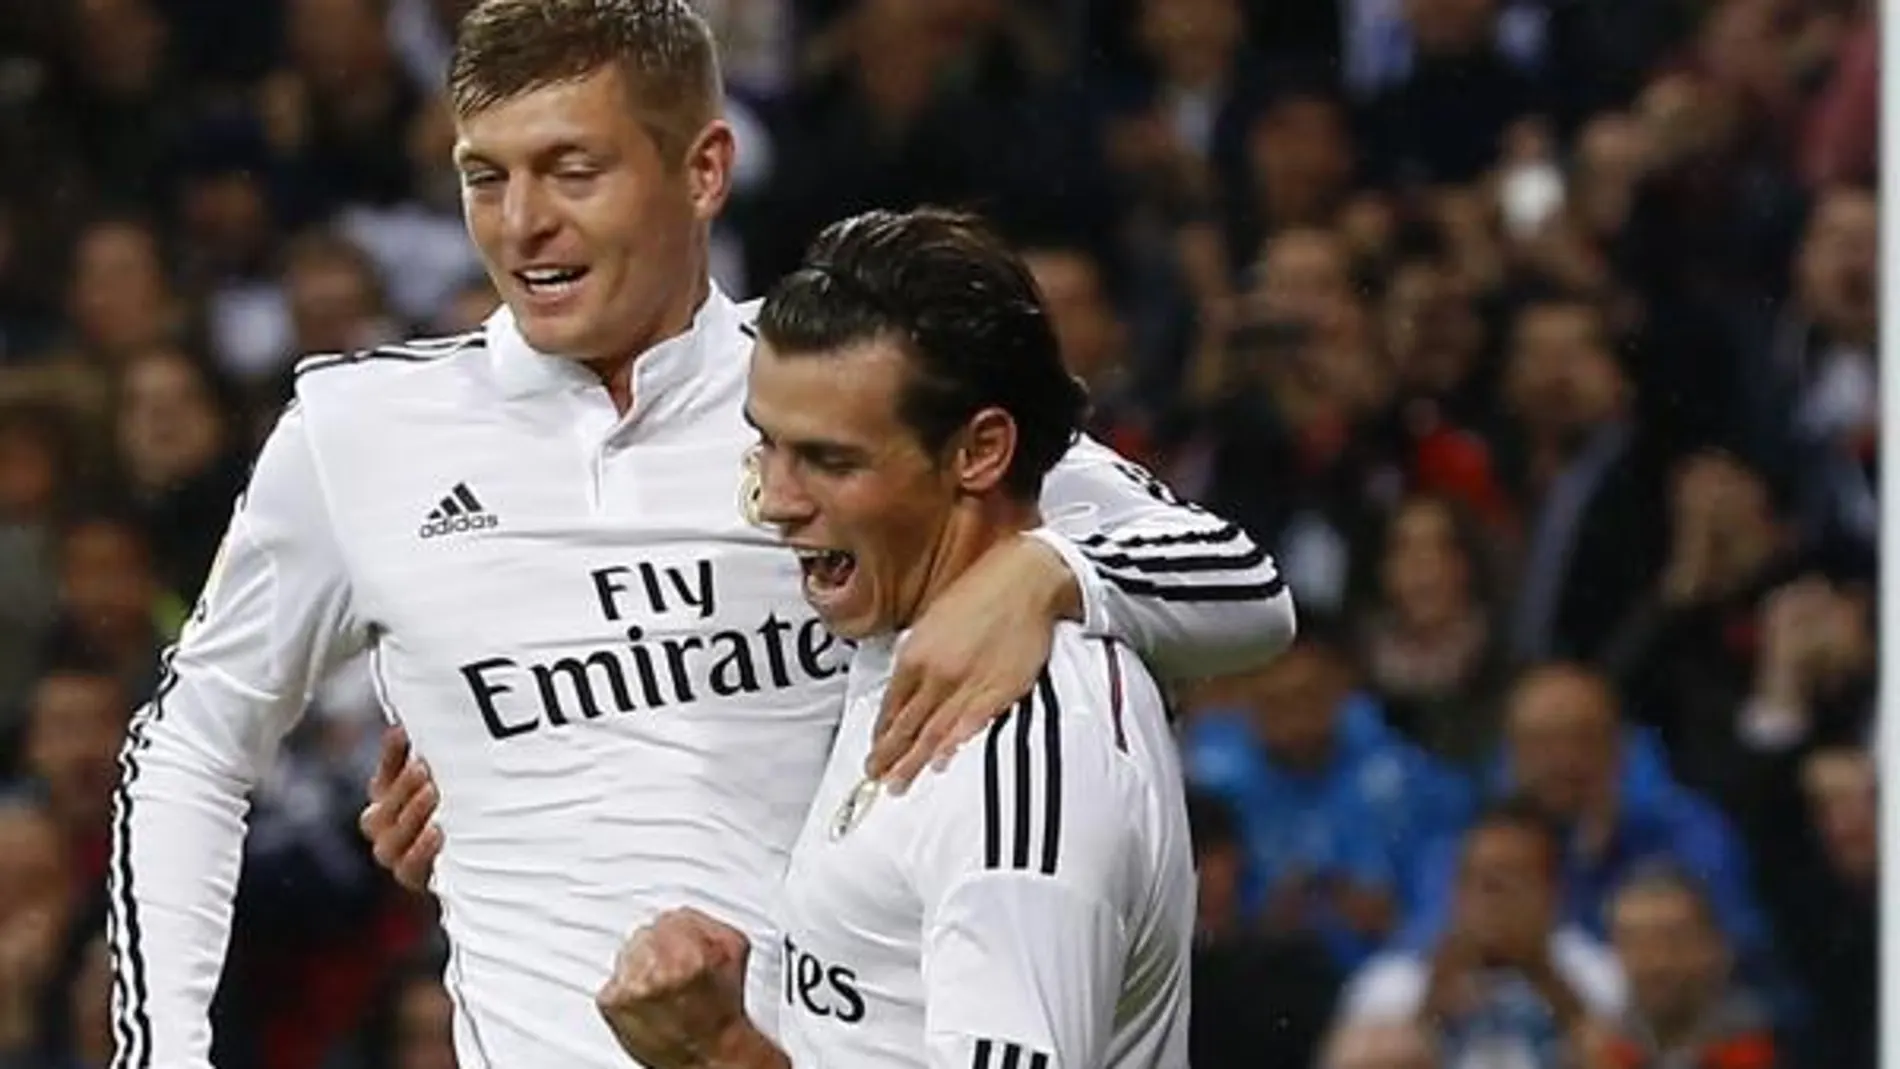 El jugador galés del Real Madrid Gateh Bale celebra el primer gol ante el Rayo Vallecano